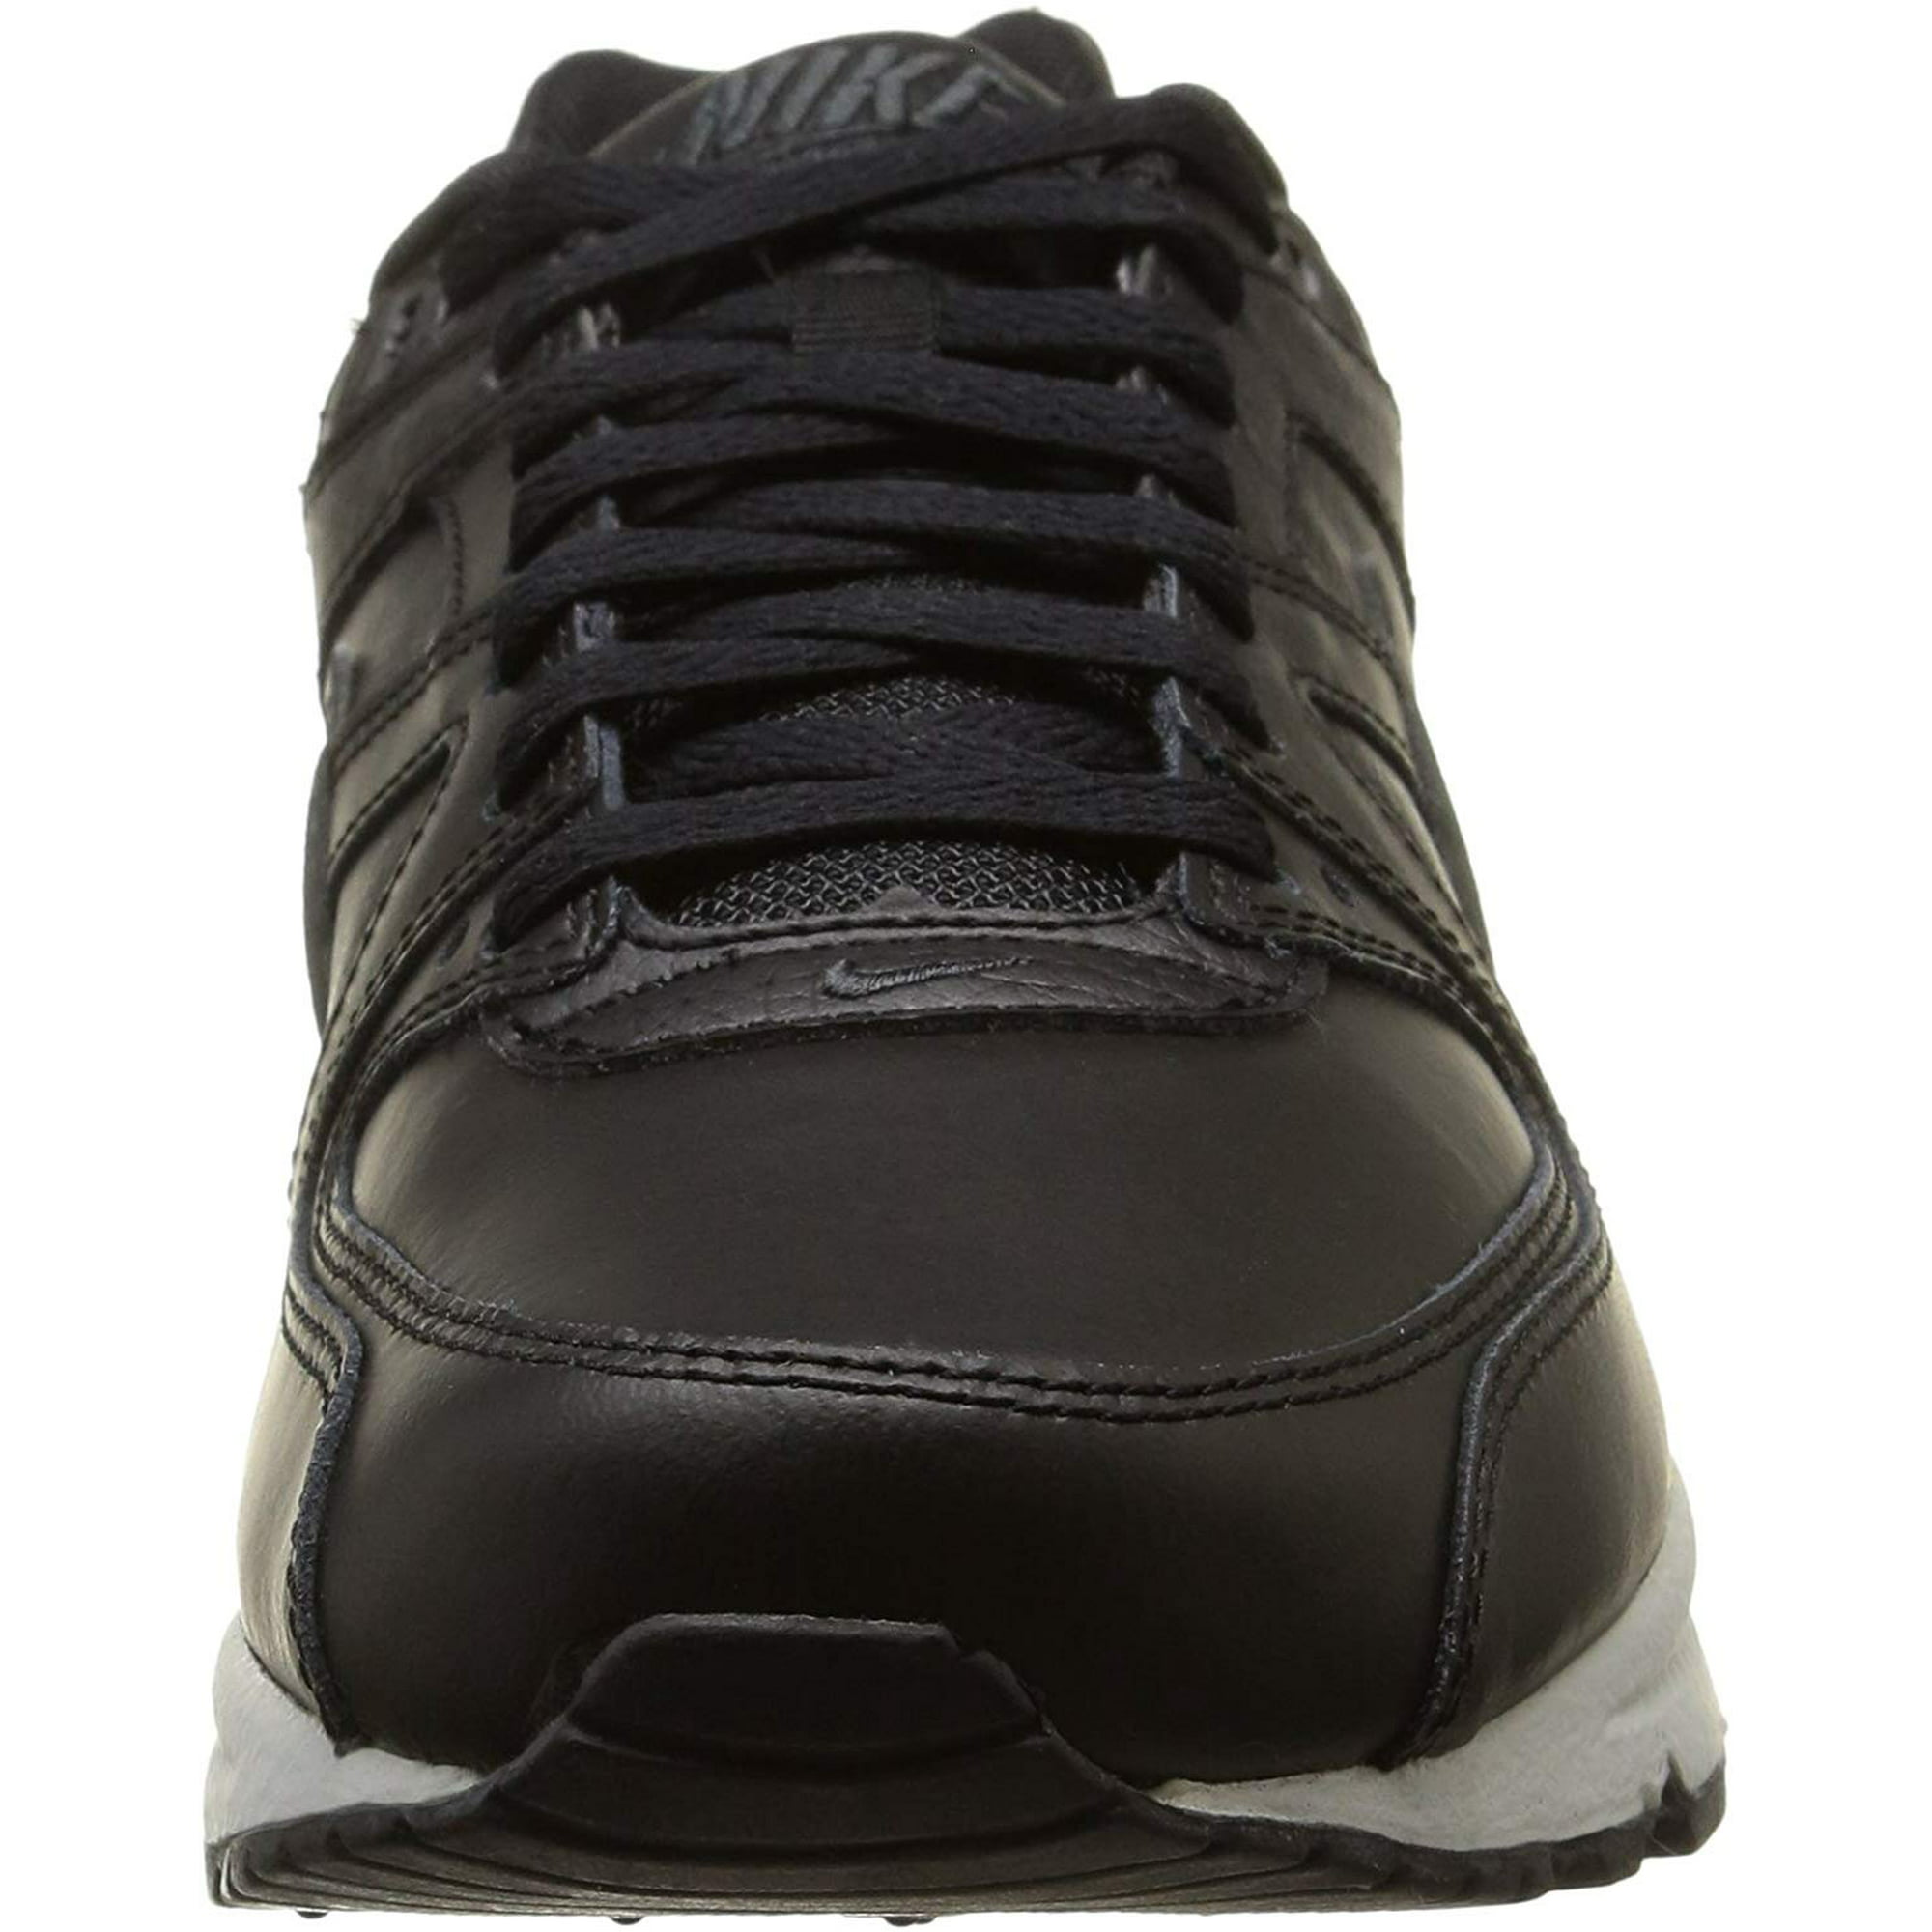 Onbelangrijk mannelijk Ontmoedigd zijn Nike Air Max Command Leather Mens Running Trainers 749760 Sneakers Shoes  (UK 7 US 8 EU 41, Black Anthracite Neutral Grey 001) | Walmart Canada